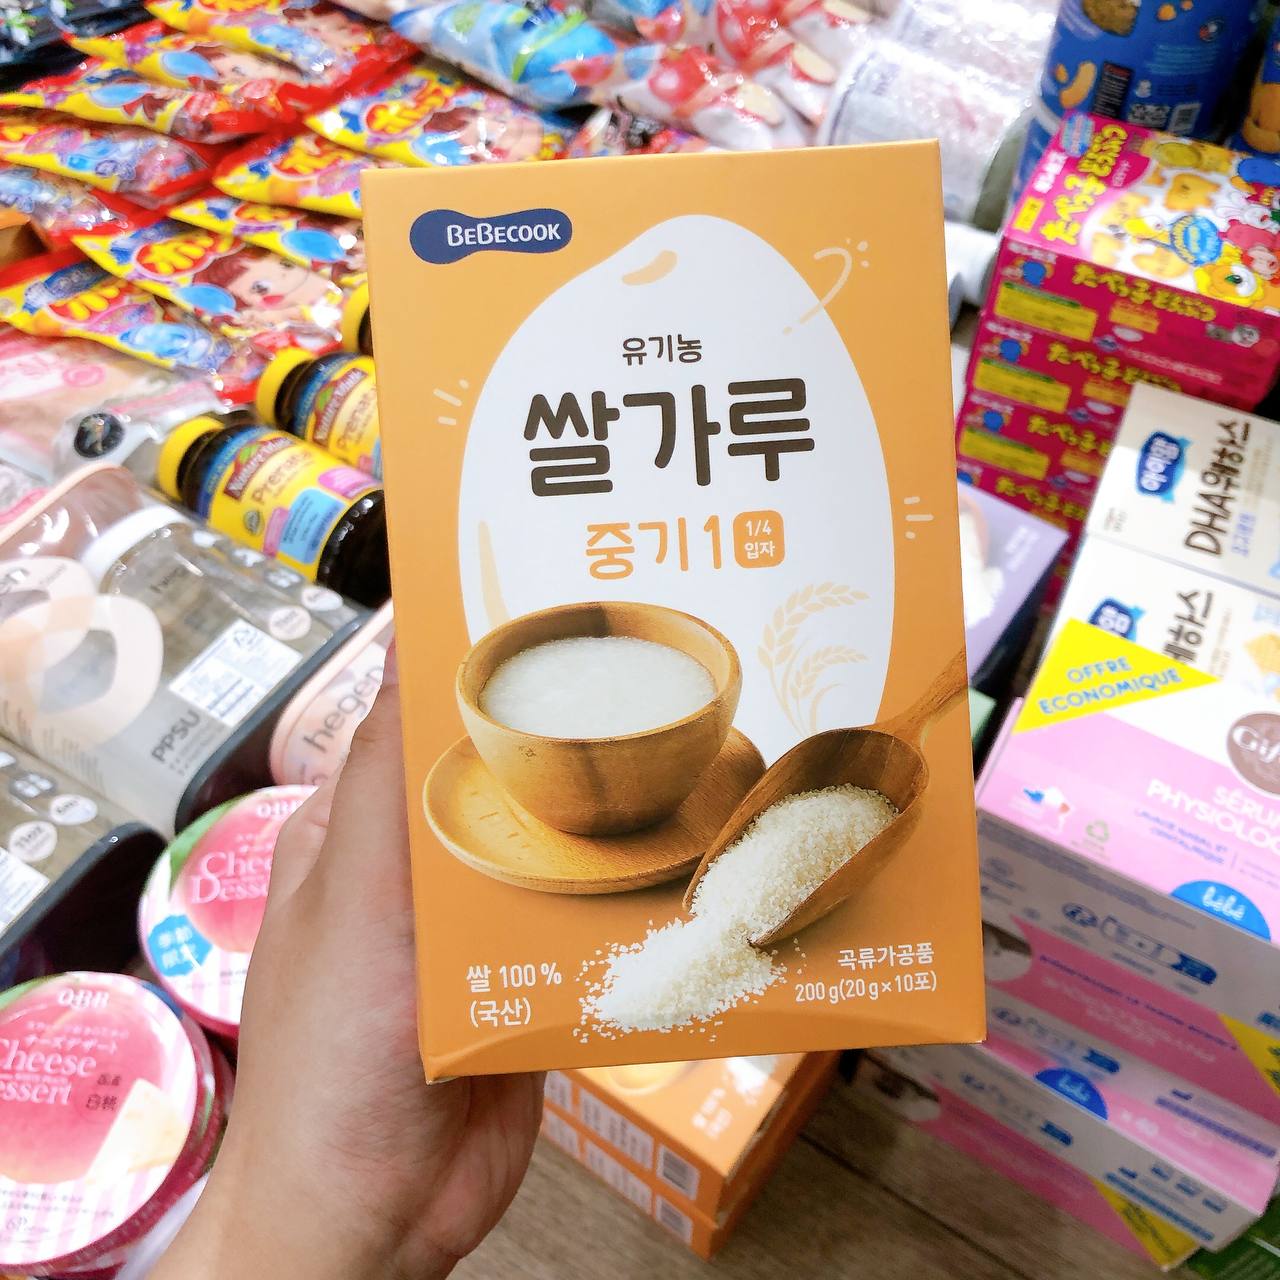 Gạo Hữu Cơ Hạt Vỡ Bebecook Hàn Quốc